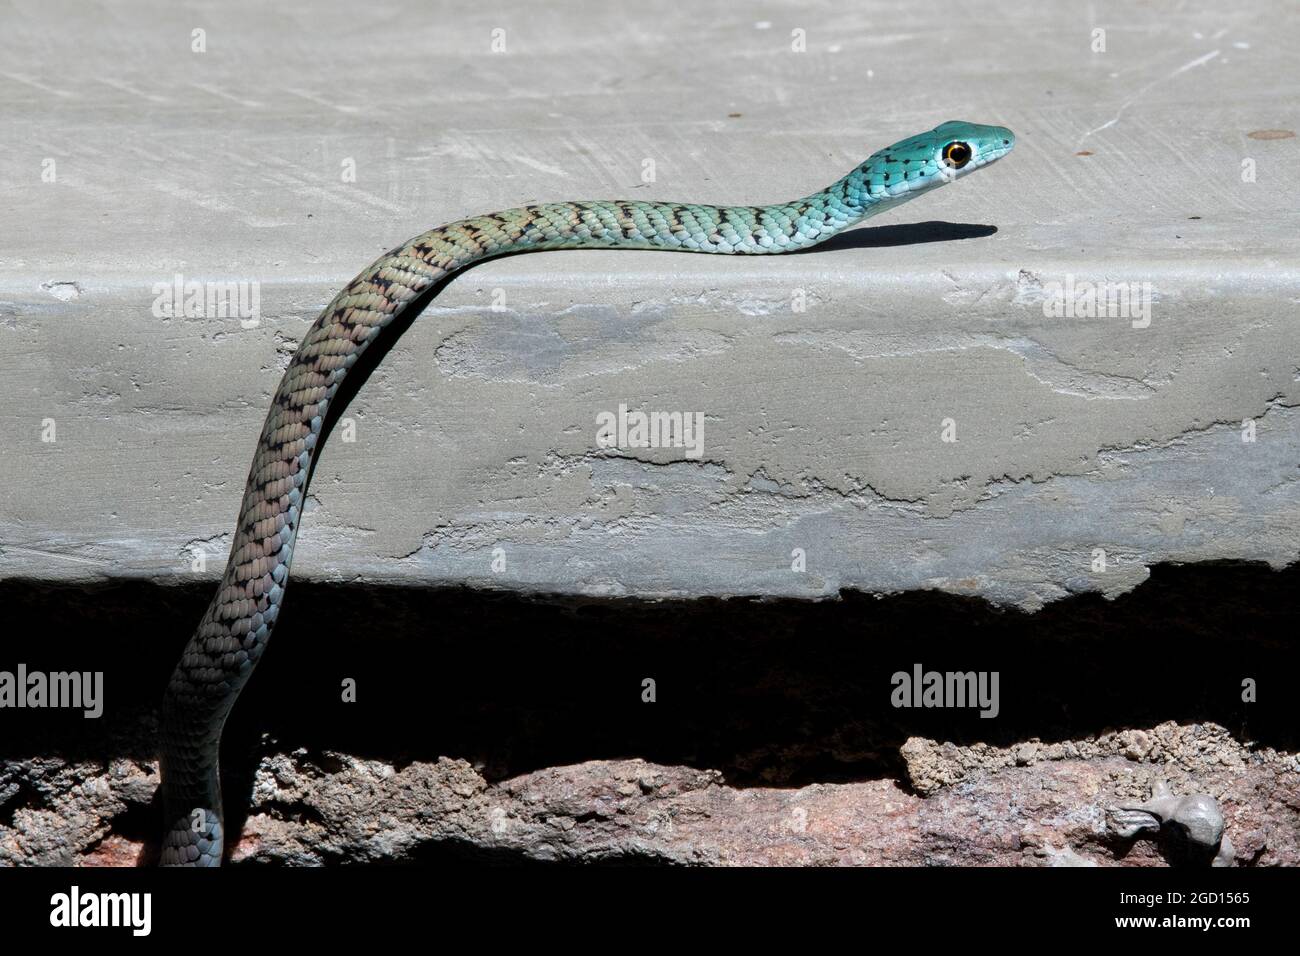 Zambie, Sud Luangwa. Serpent de brousse africain (Philothamnus semivariegatus) alias serpent de brousse tacheté. Serpent colubrid inoffensif, non venimeux. Banque D'Images